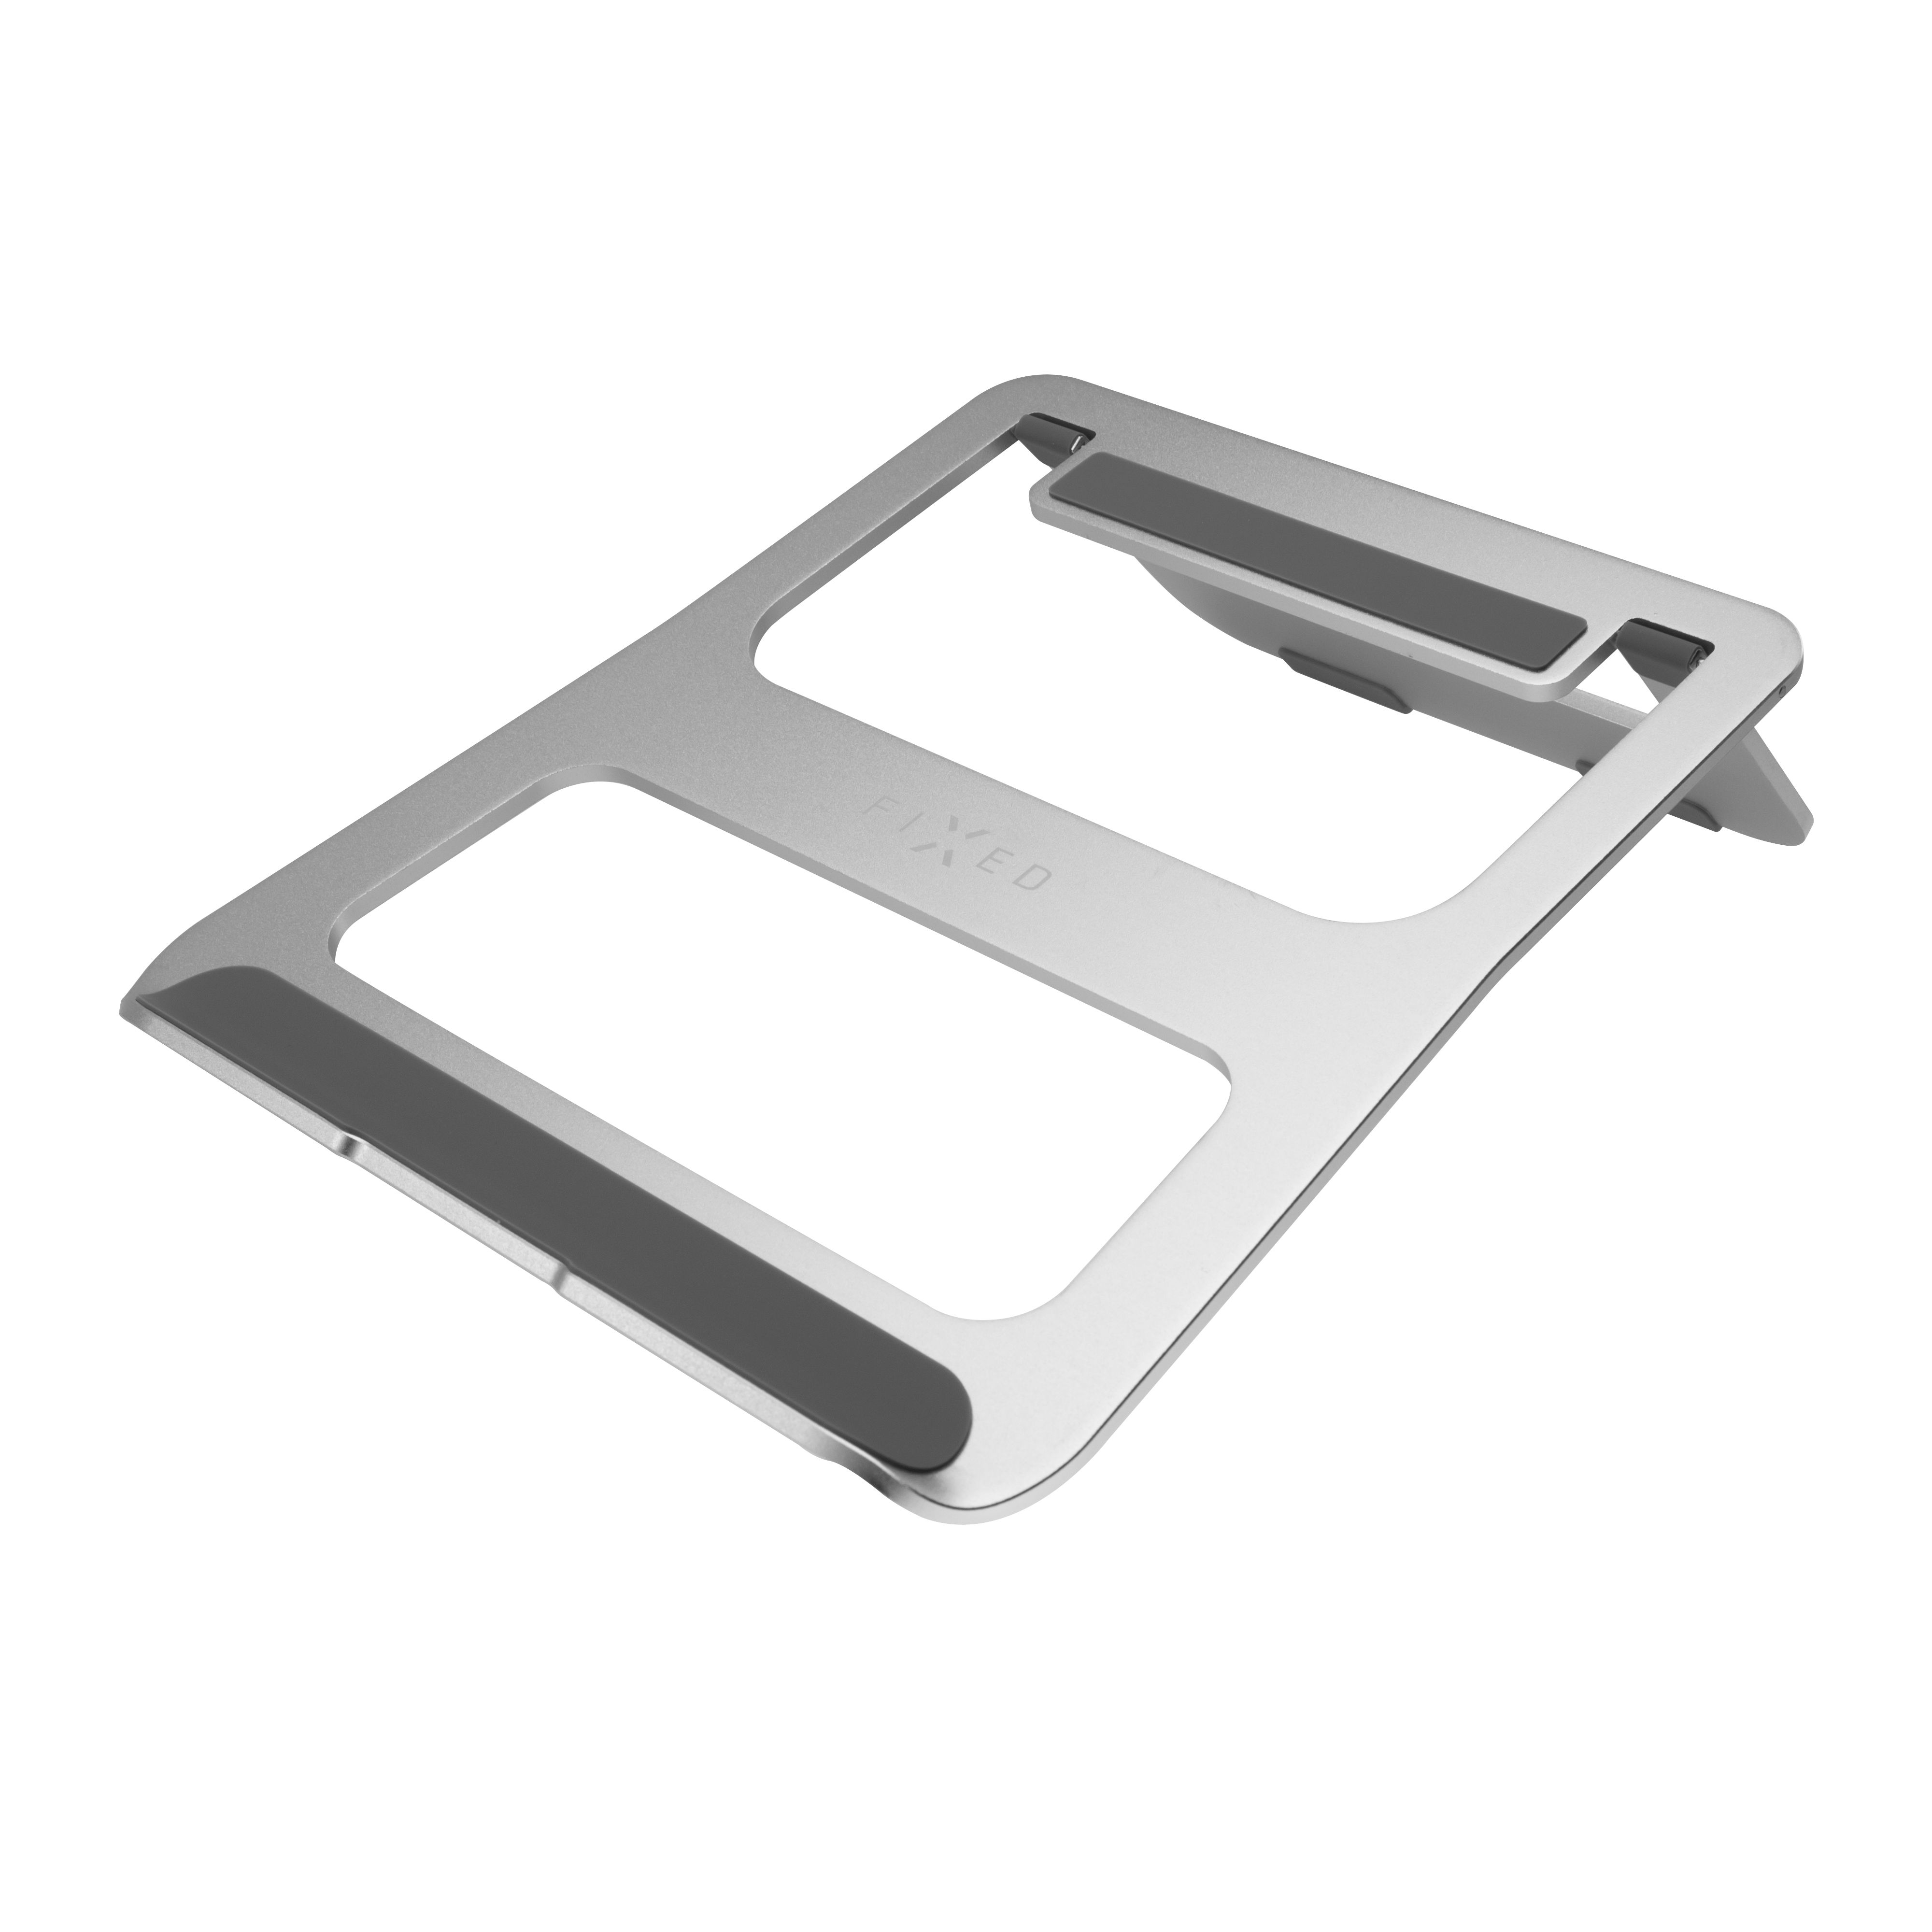 Hliníkový stojánek FIXED Frame BOOK na stůl pro notebooky, stříbrný